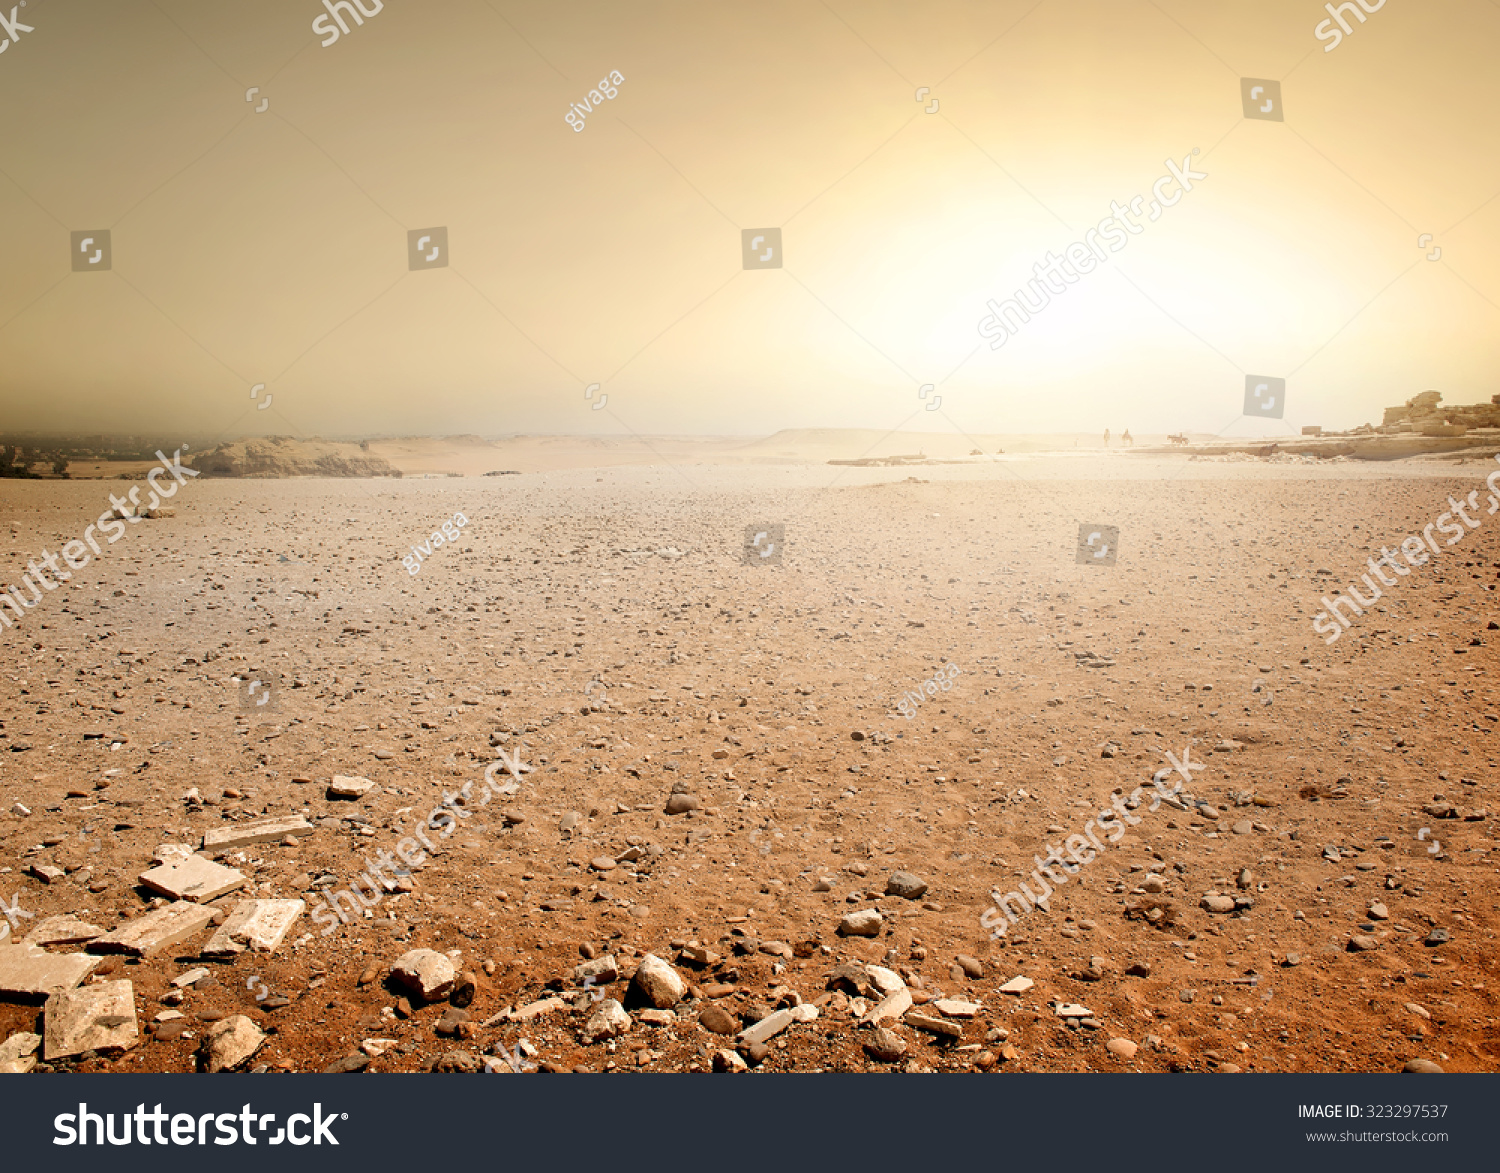 Sandy desert in Egypt at the sunset #323297537